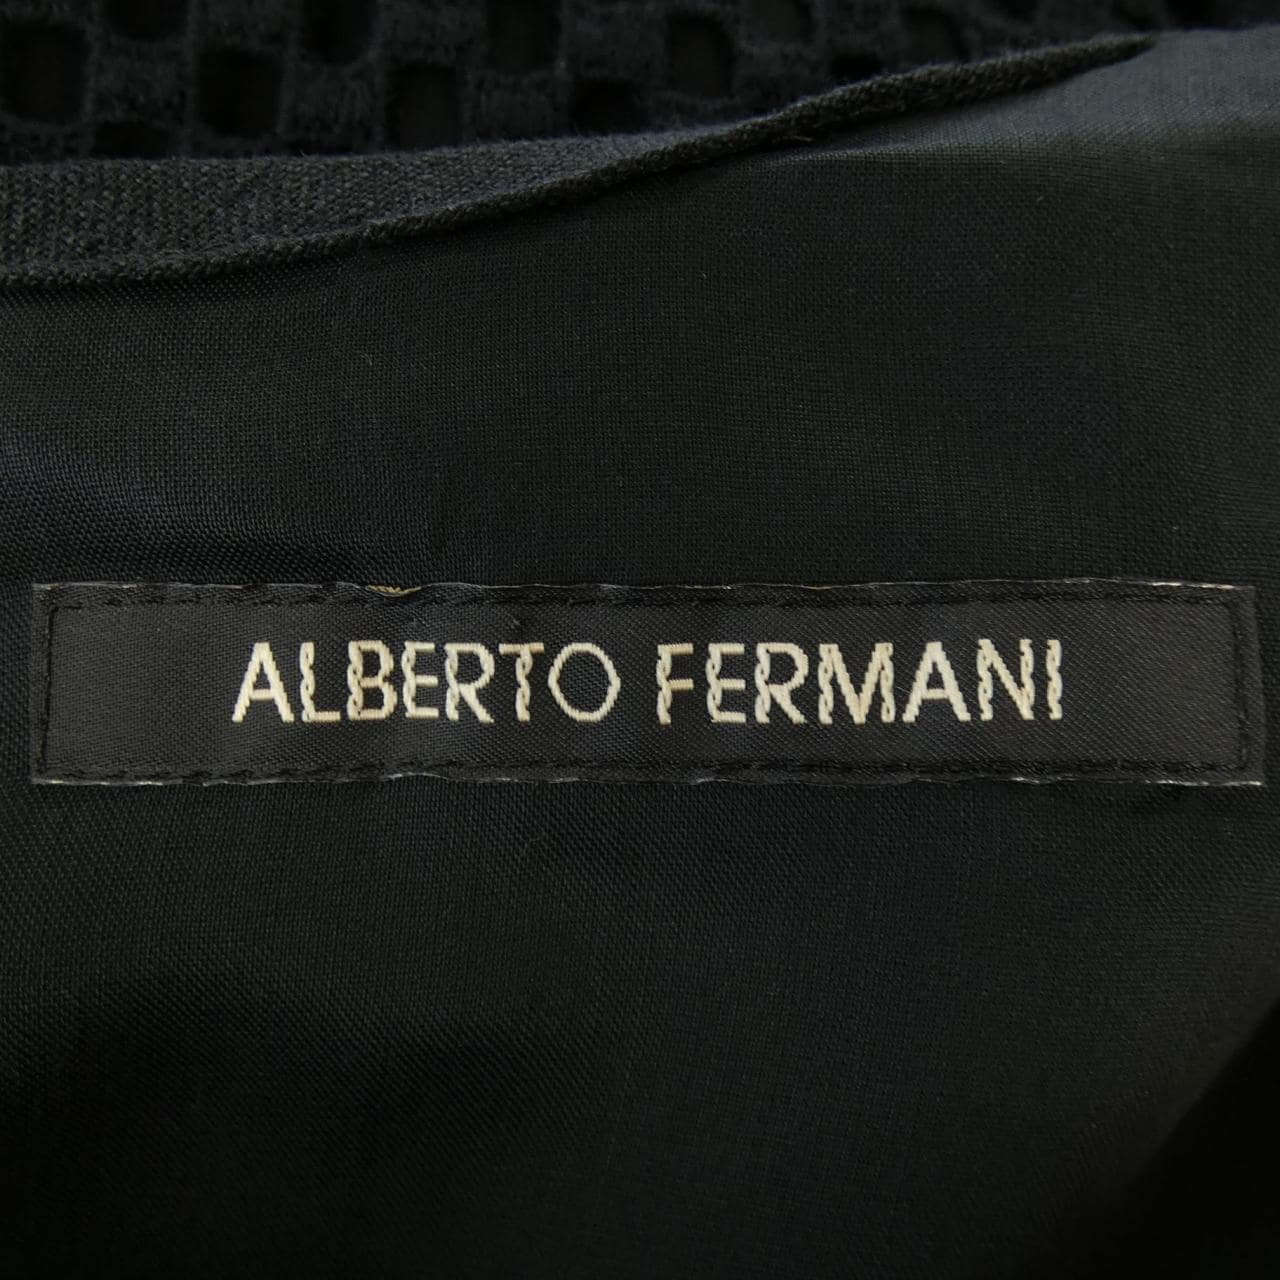 ALBERTO FERMANI dress